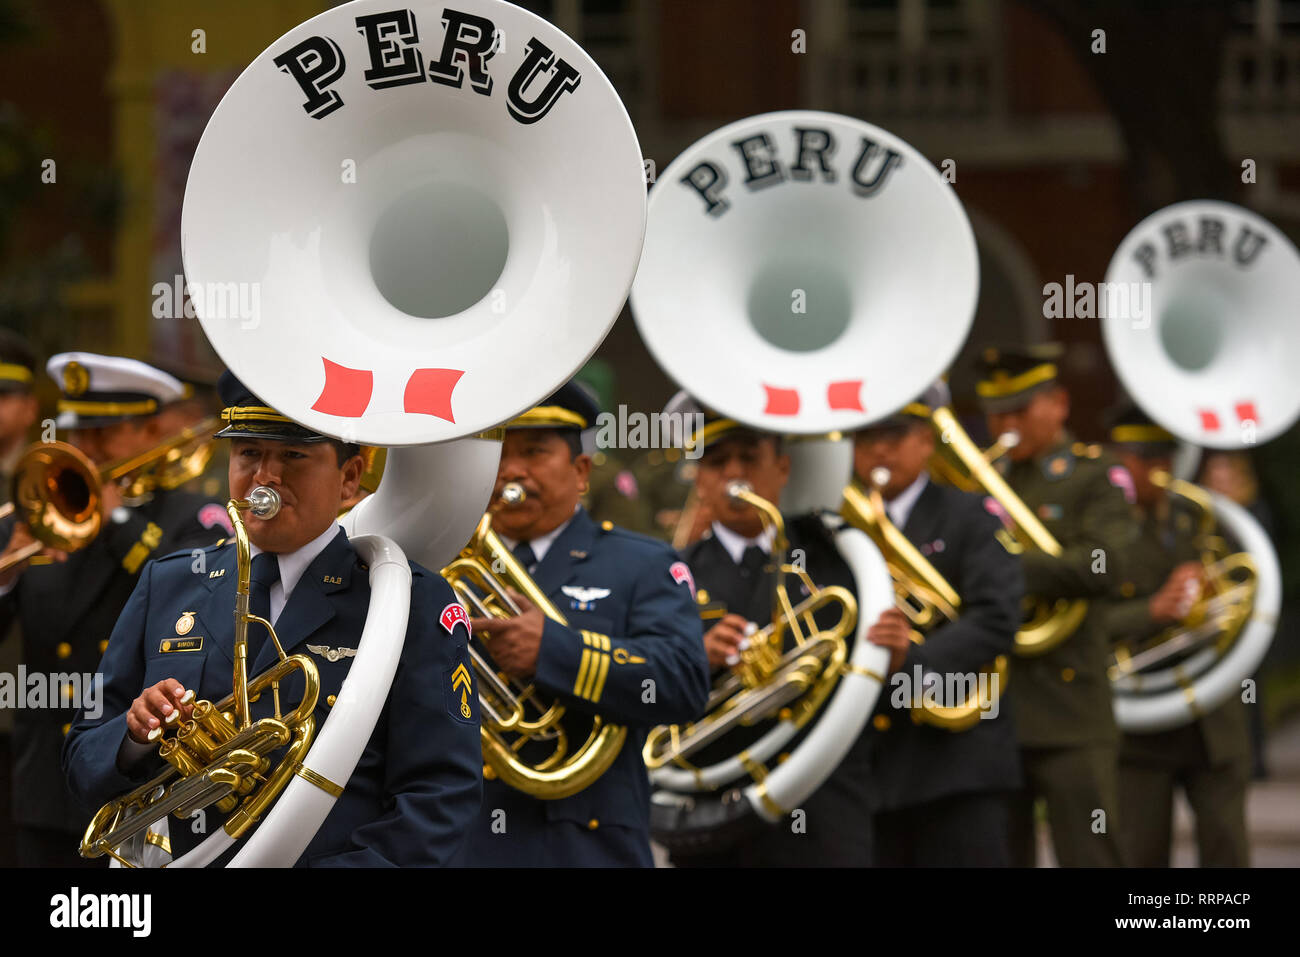 Buenos Aires, Argentina - Jul 11, 2016: Los miembros de la banda del ejército peruano realizar en el desfile durante las celebraciones del bicentenario anniversar Foto de stock